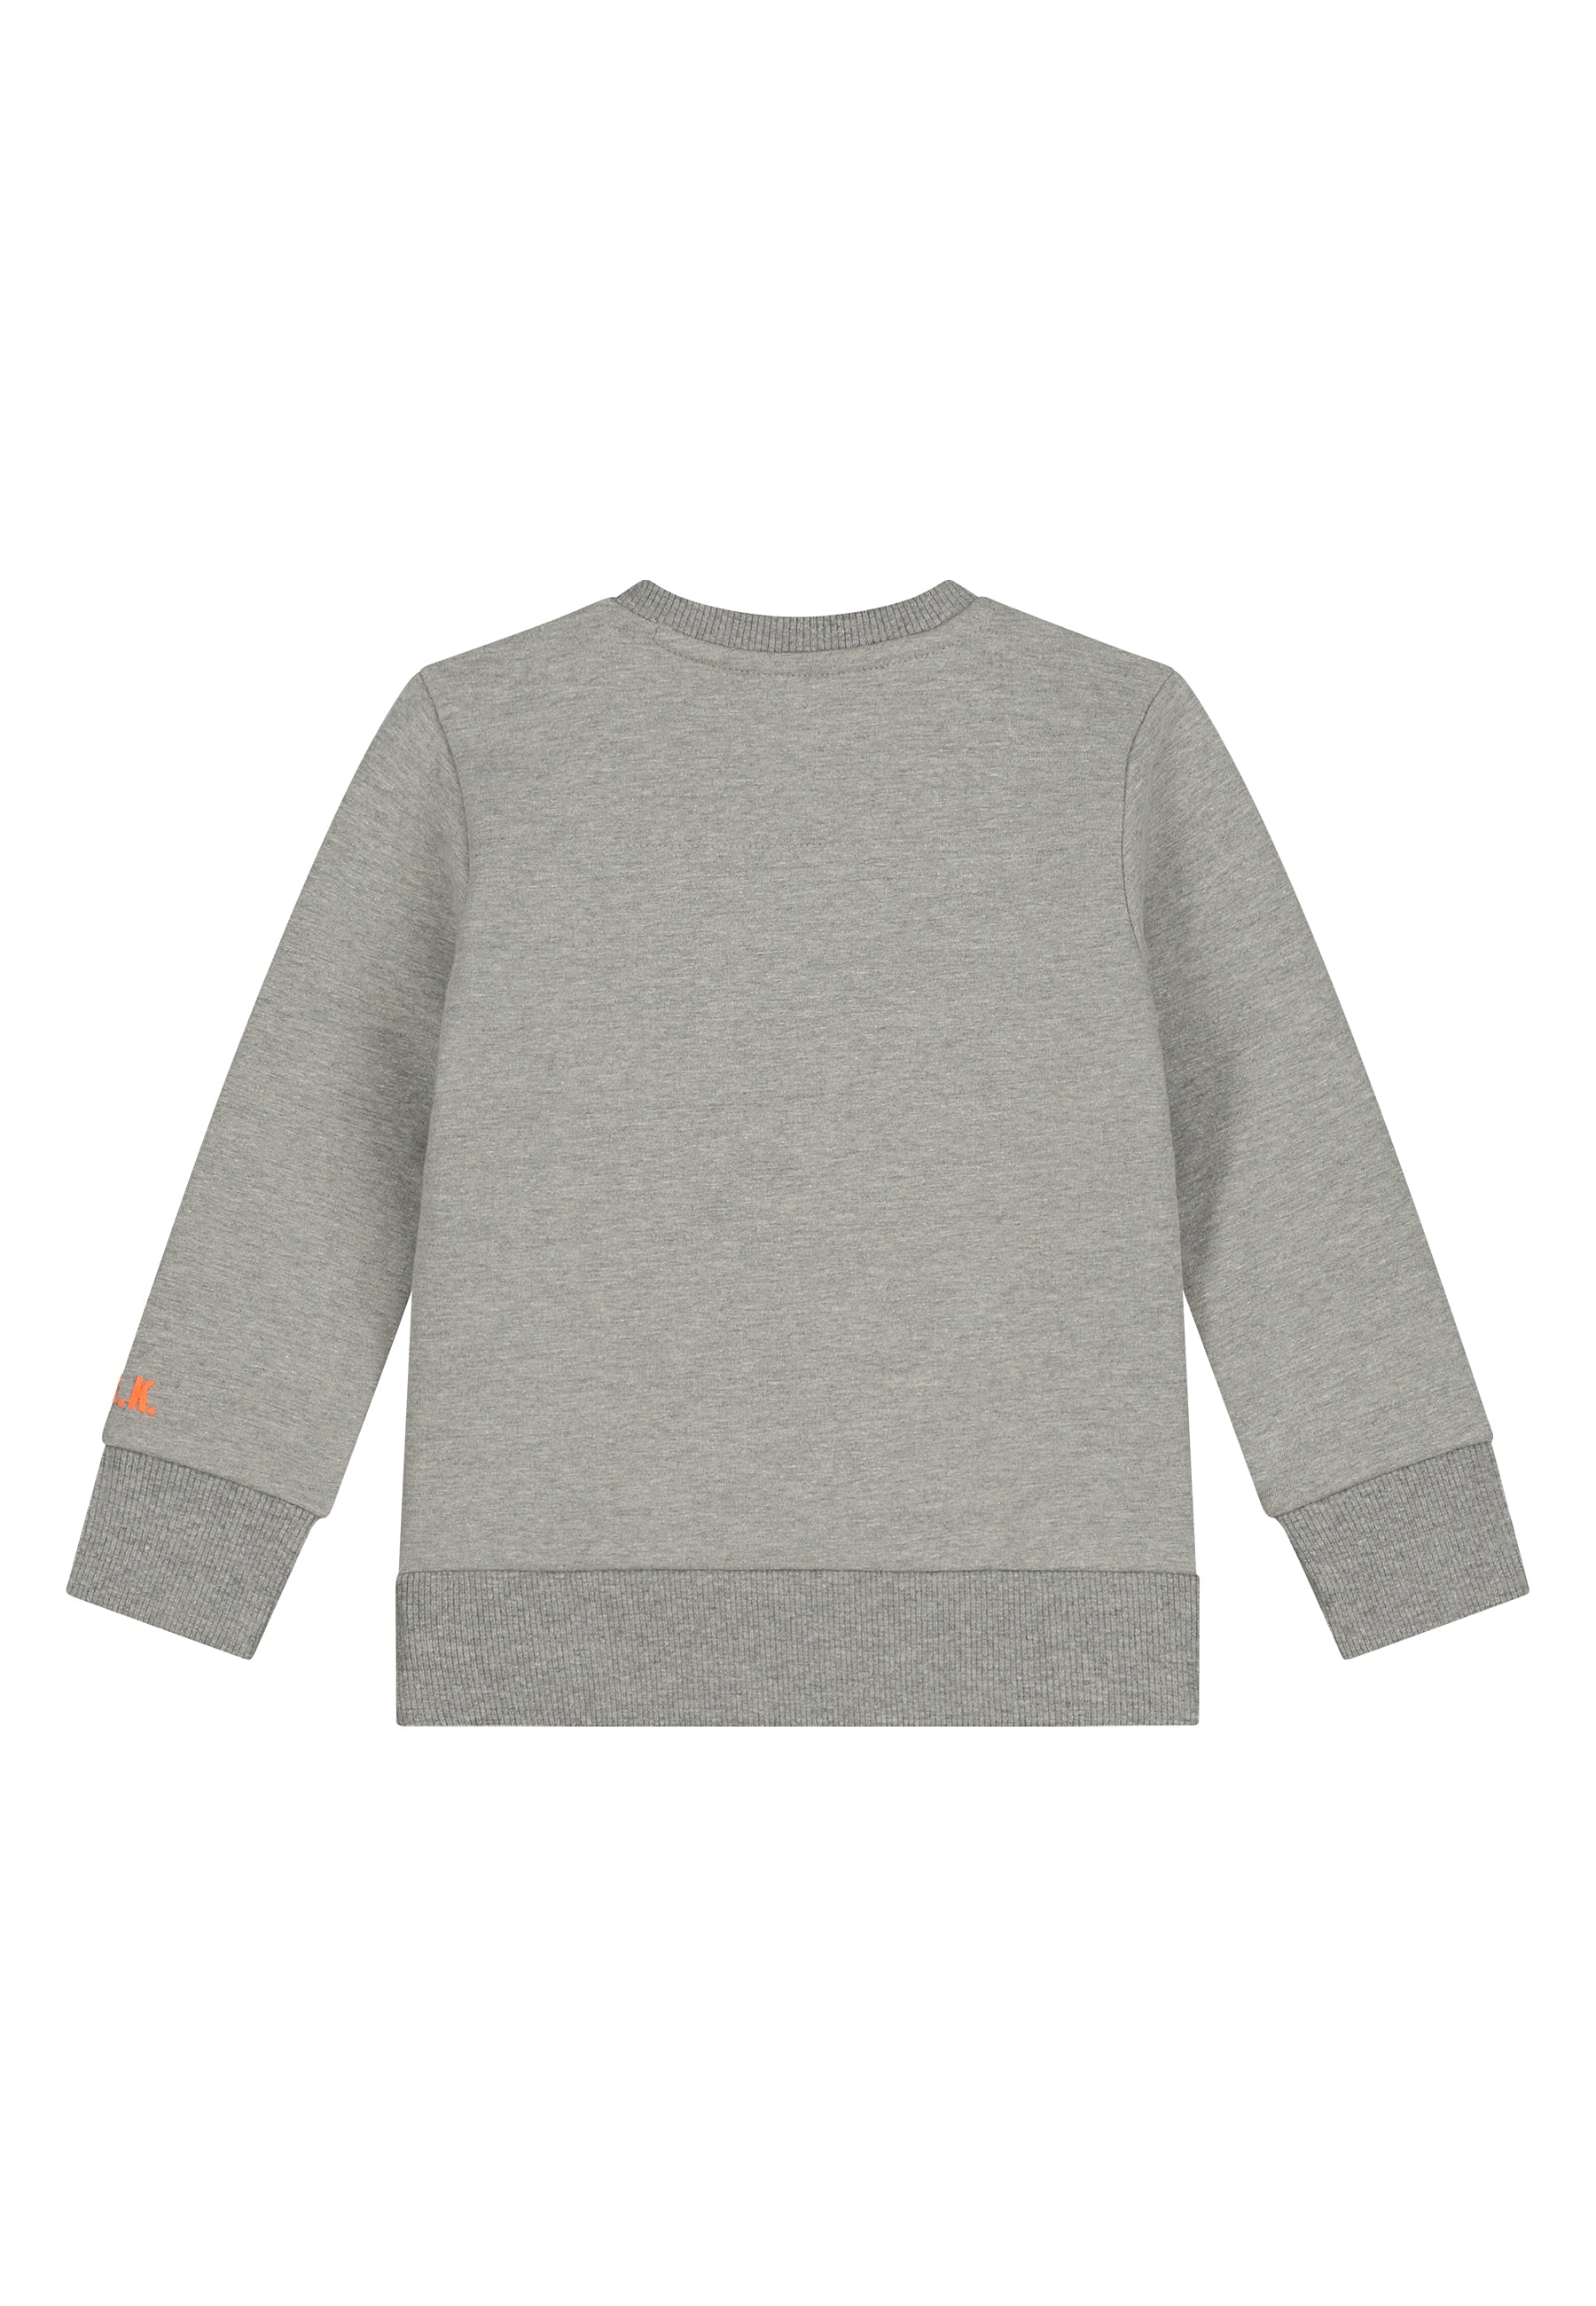 Skurk Sweater Sam Light gray melange